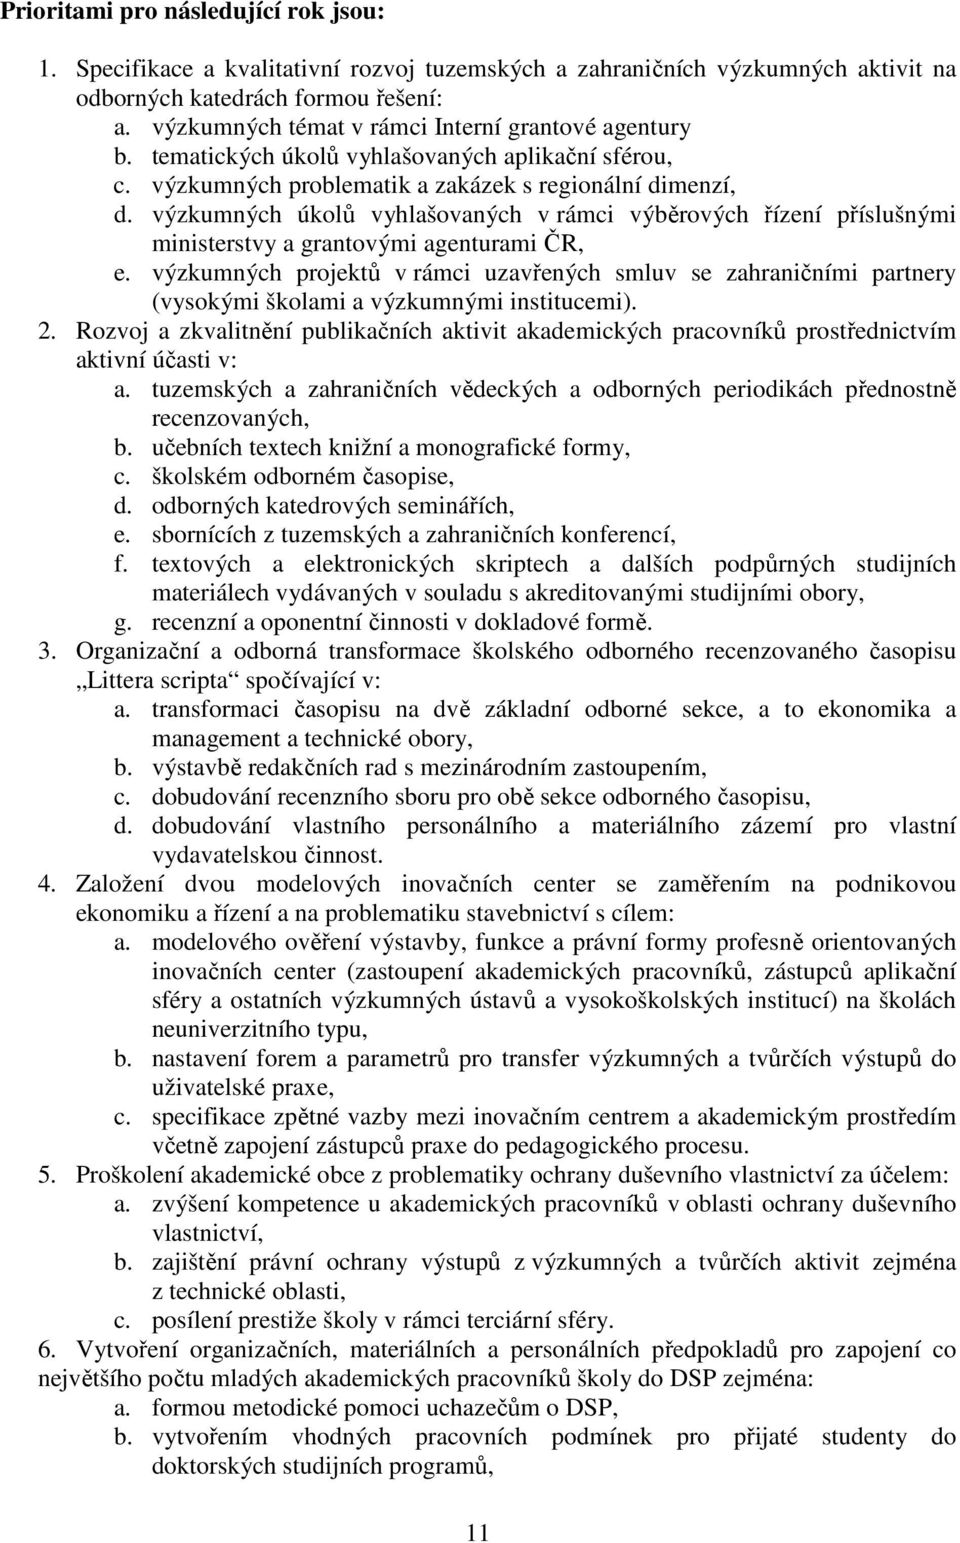 výzkumných úkolů vyhlašovaných v rámci výběrových řízení příslušnými ministerstvy a grantovými agenturami ČR, e.